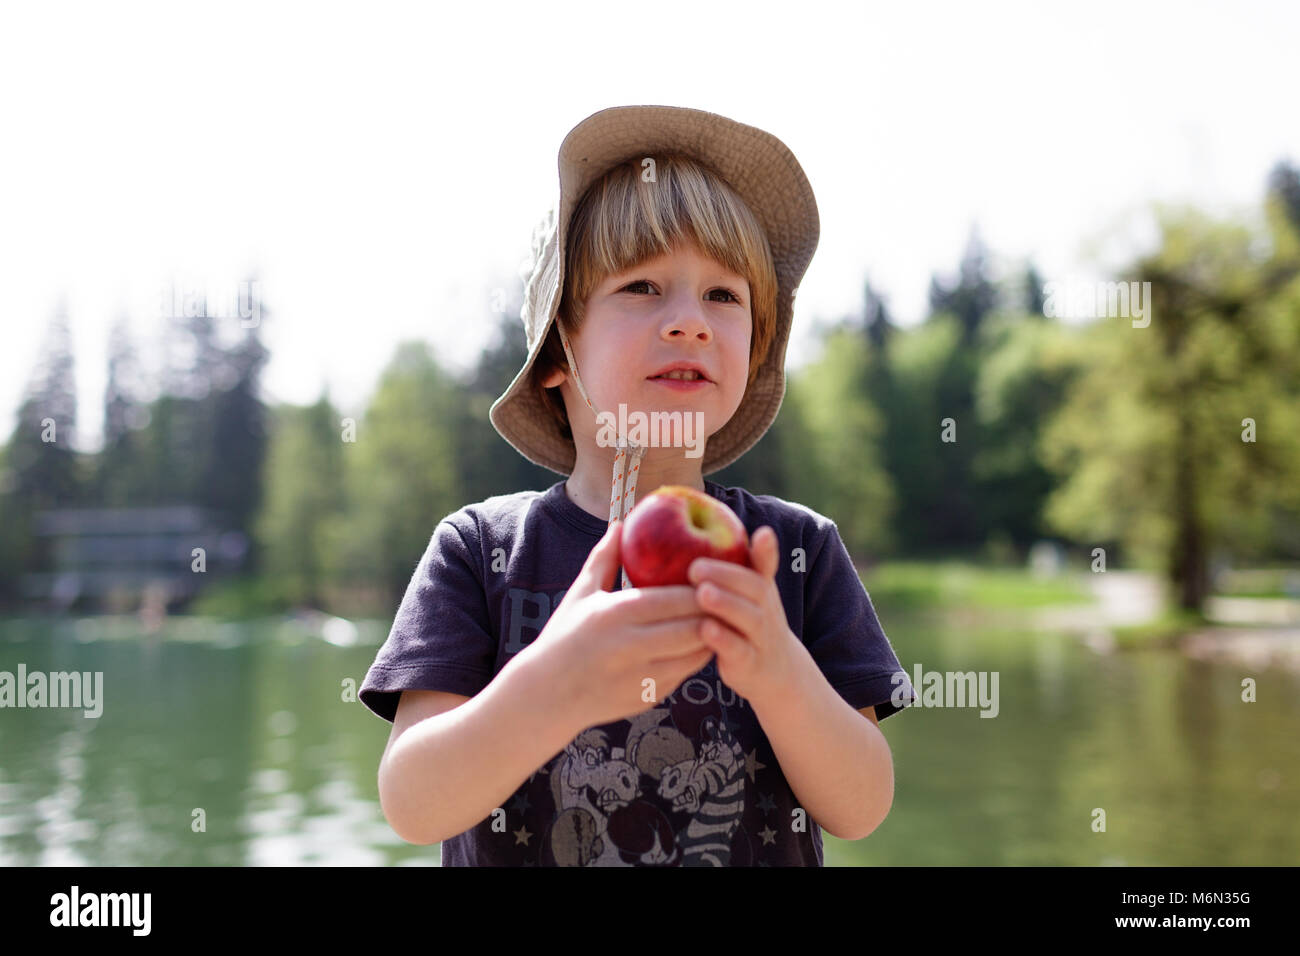 Agricoltura - un ragazzino con un cappello trattiene e mangia una mela fresco dal lago di Bled Slovenia, Europa Foto Stock